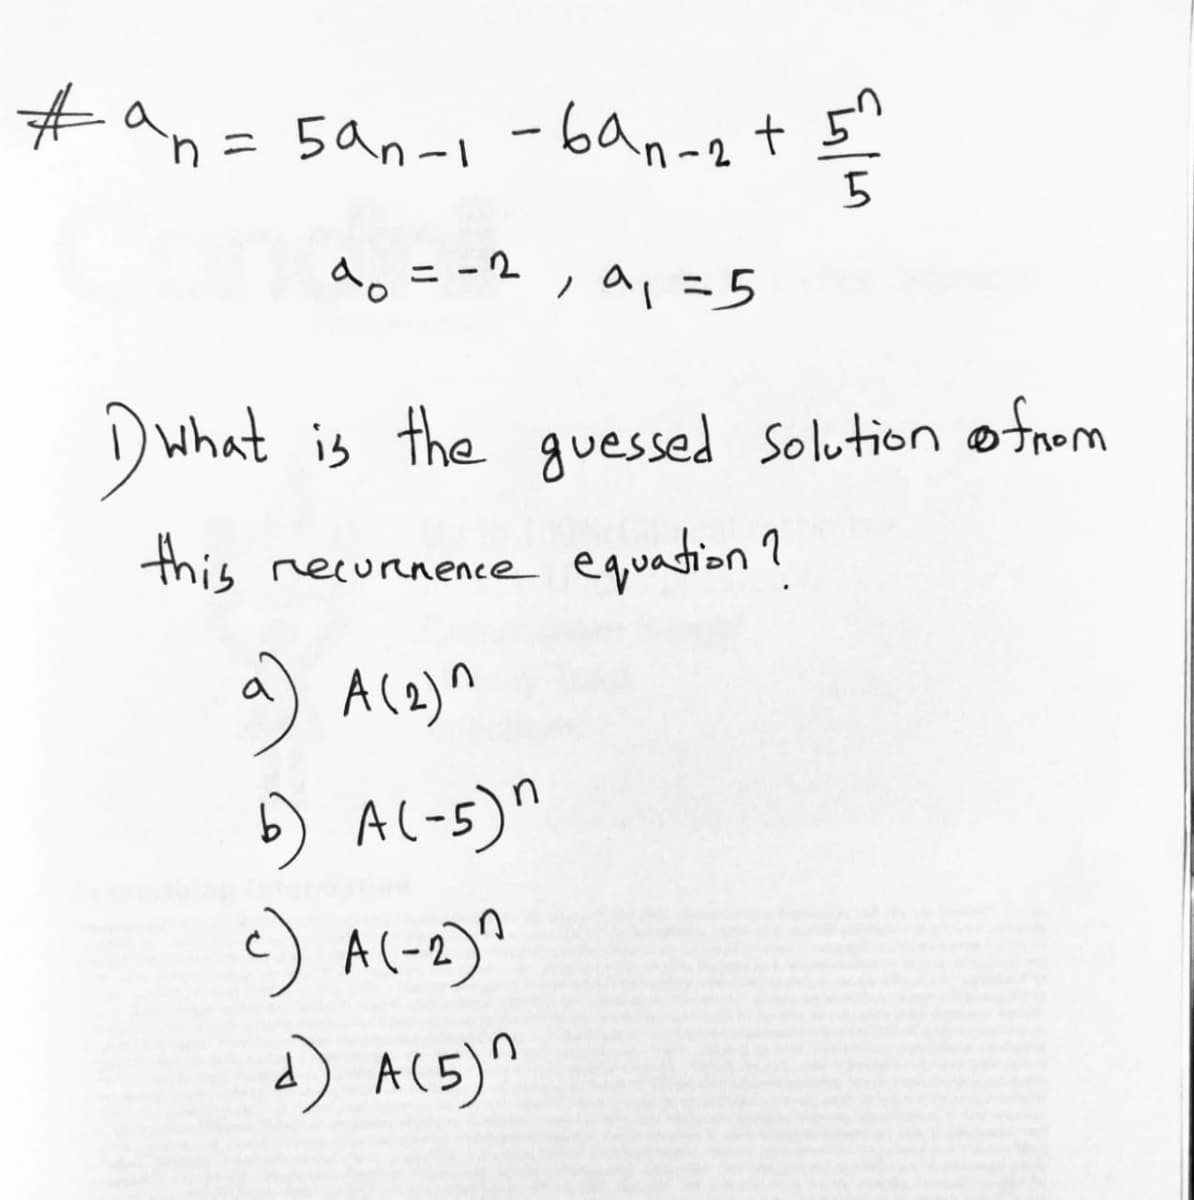 #an= 5an-1-6an-2t5"
a。ニ-2 , a,=5
D what is the guessed solution ofnom
this necurenence equation ?
a) A(2)^
) Al-5)^
c) A(-2)^
) AL5)"
